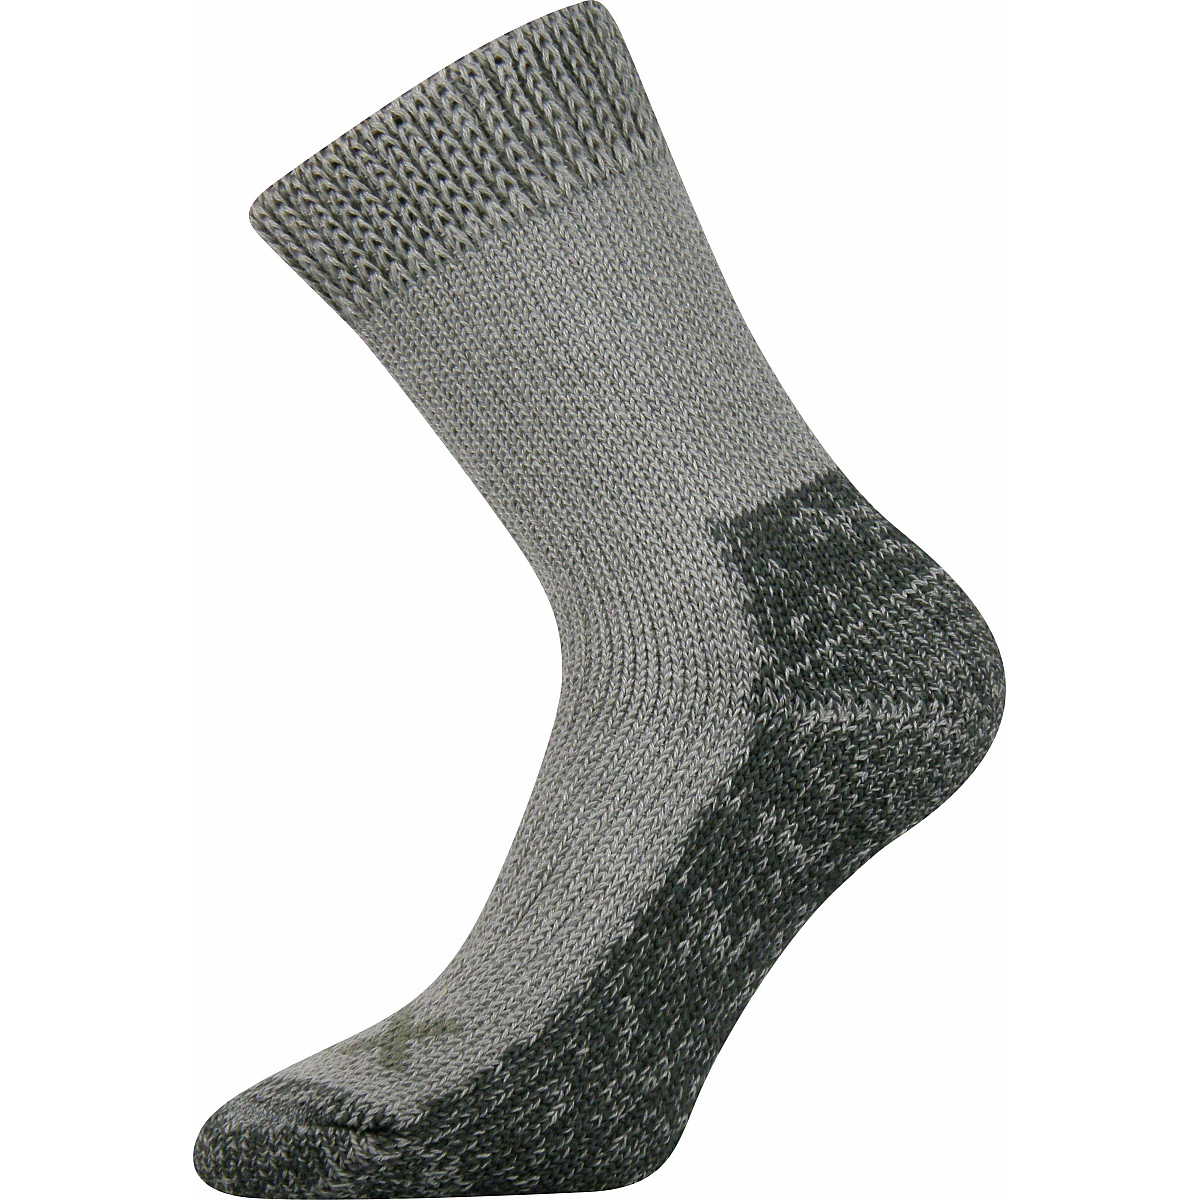 Extra teplé vlněné ponožky Voxx Alpin - světle šedé, 43-46